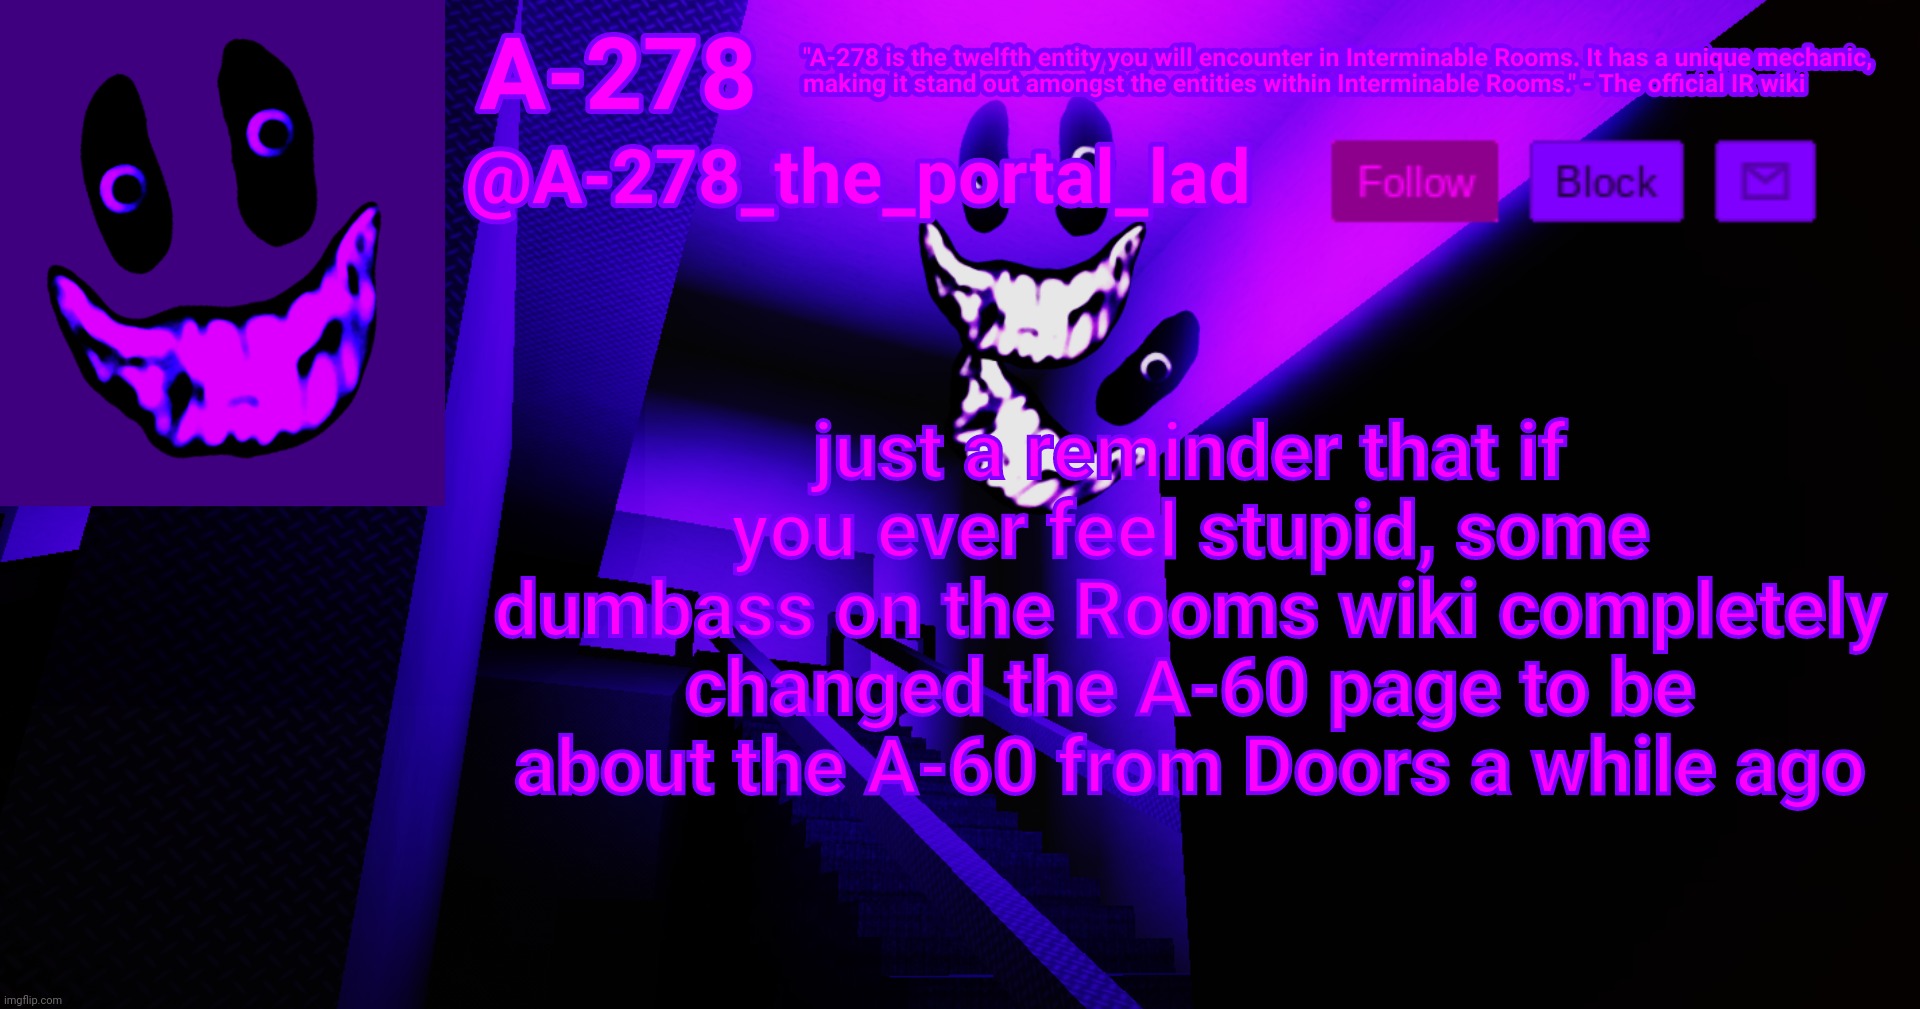 The Rooms, DOORS Wiki